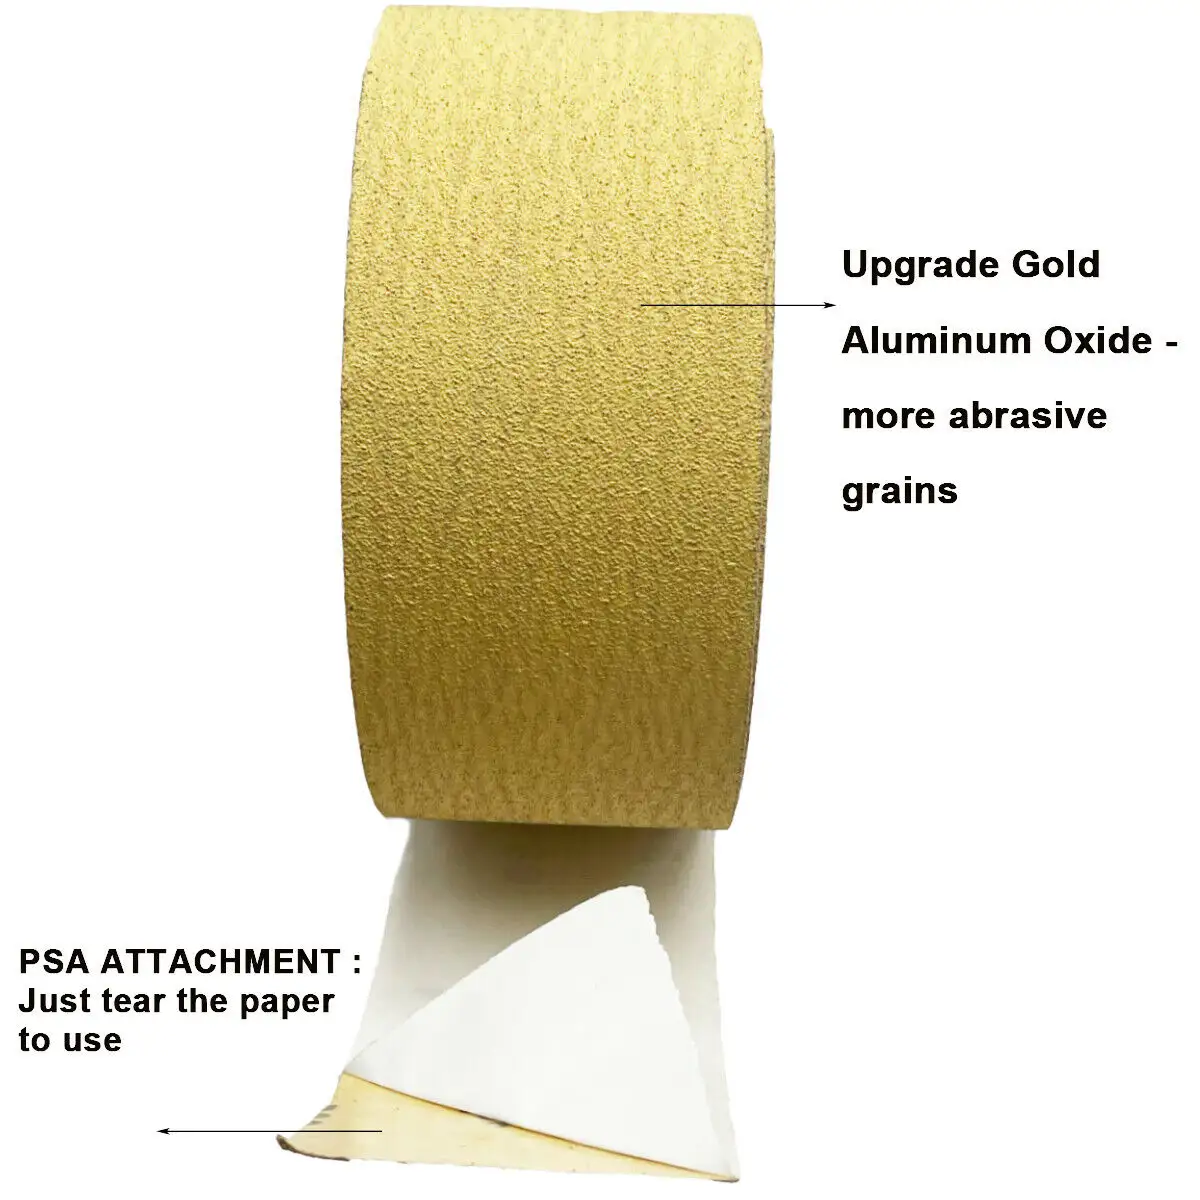 กระดาษทรายสีเหลืองเคลือบอลูมิเนียมออกไซด์ขัดกระดาษทรายม้วนสำหรับขัด25yd 320 # PSA คลังสินค้าของสหรัฐอเมริกาจัดส่งภายใน24ชั่วโมง